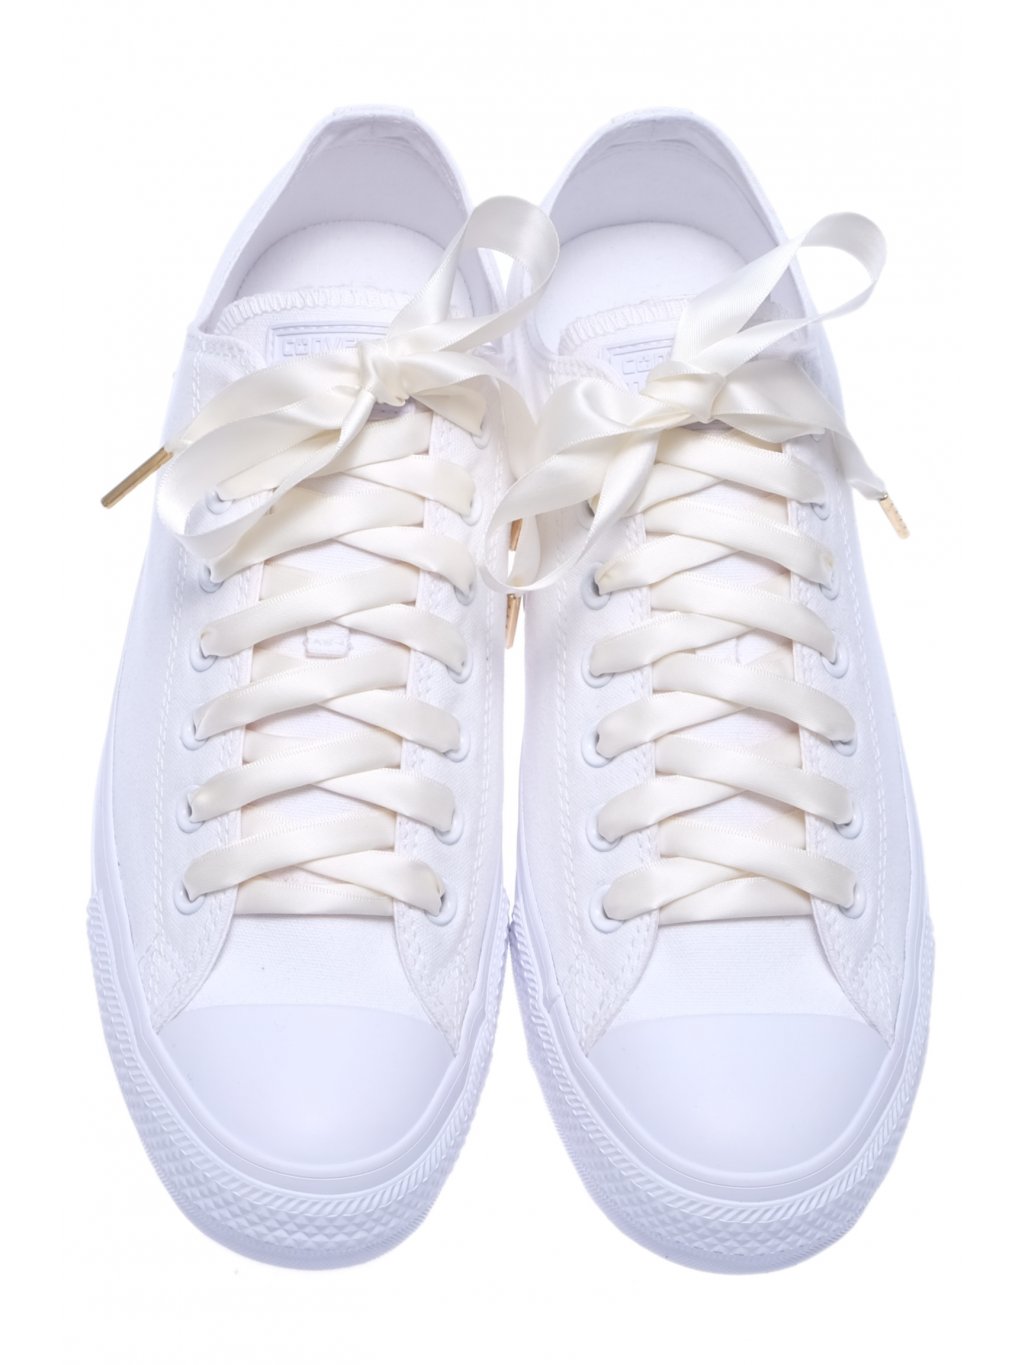 Saténové tkaničky do bot krémová bílá 2